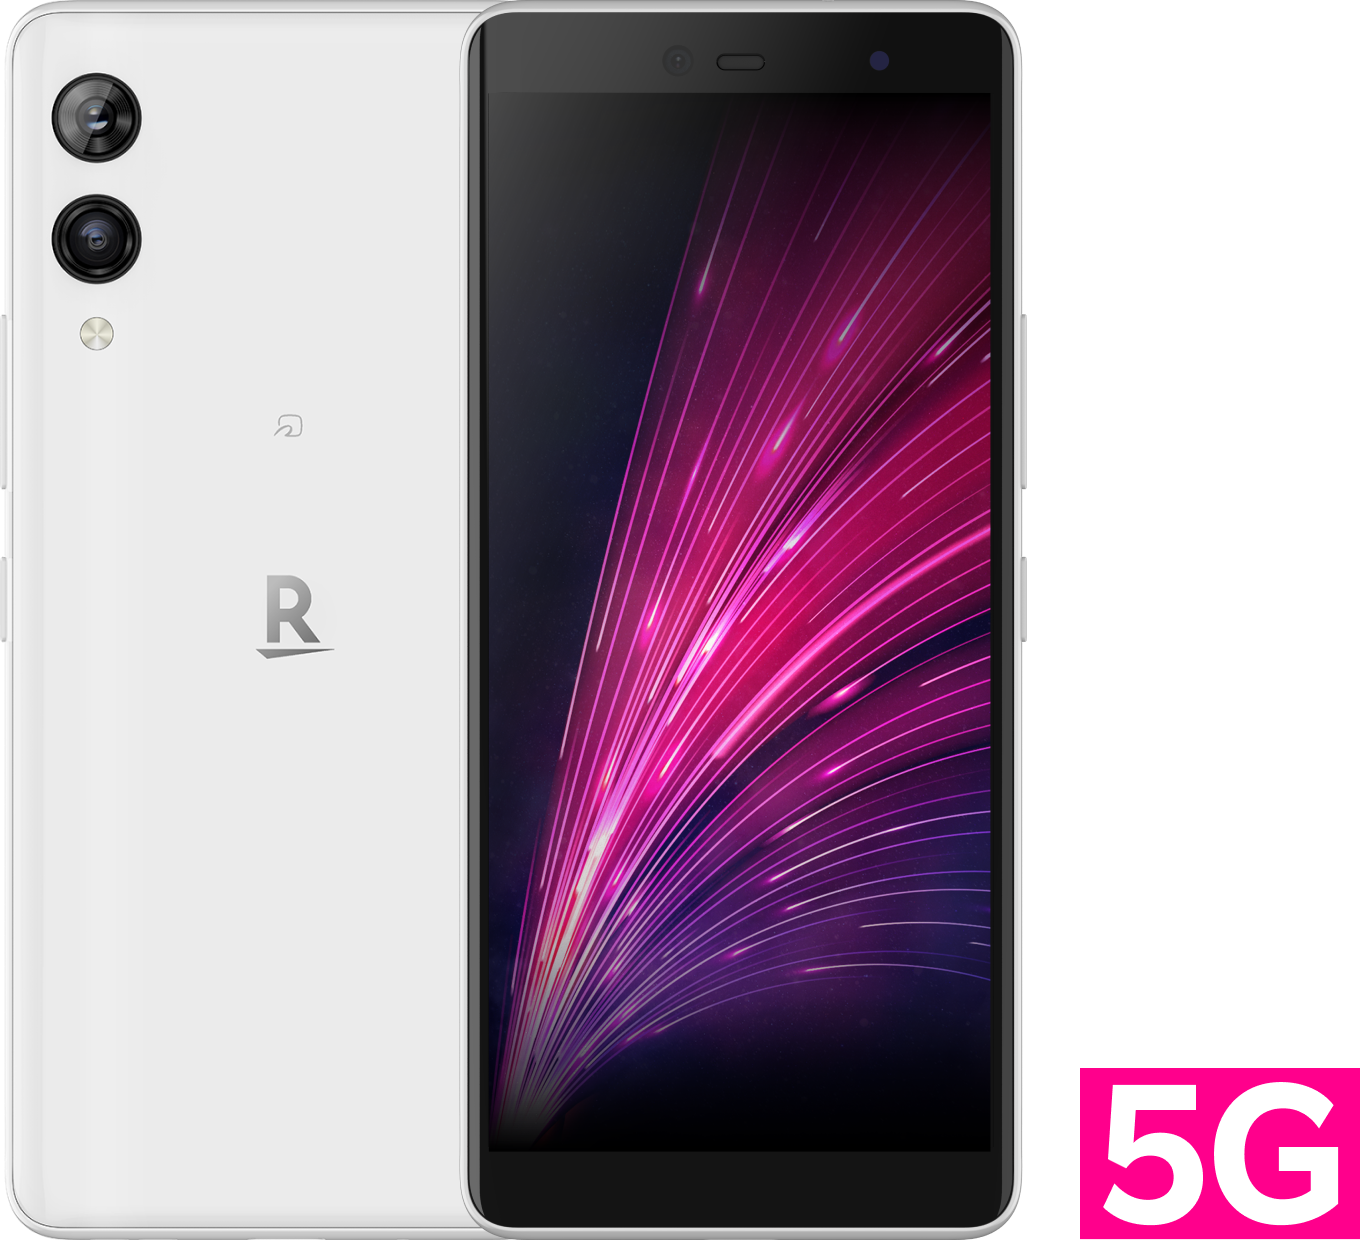 Rakuten Hand 5G | Android | 製品 | 楽天モバイル